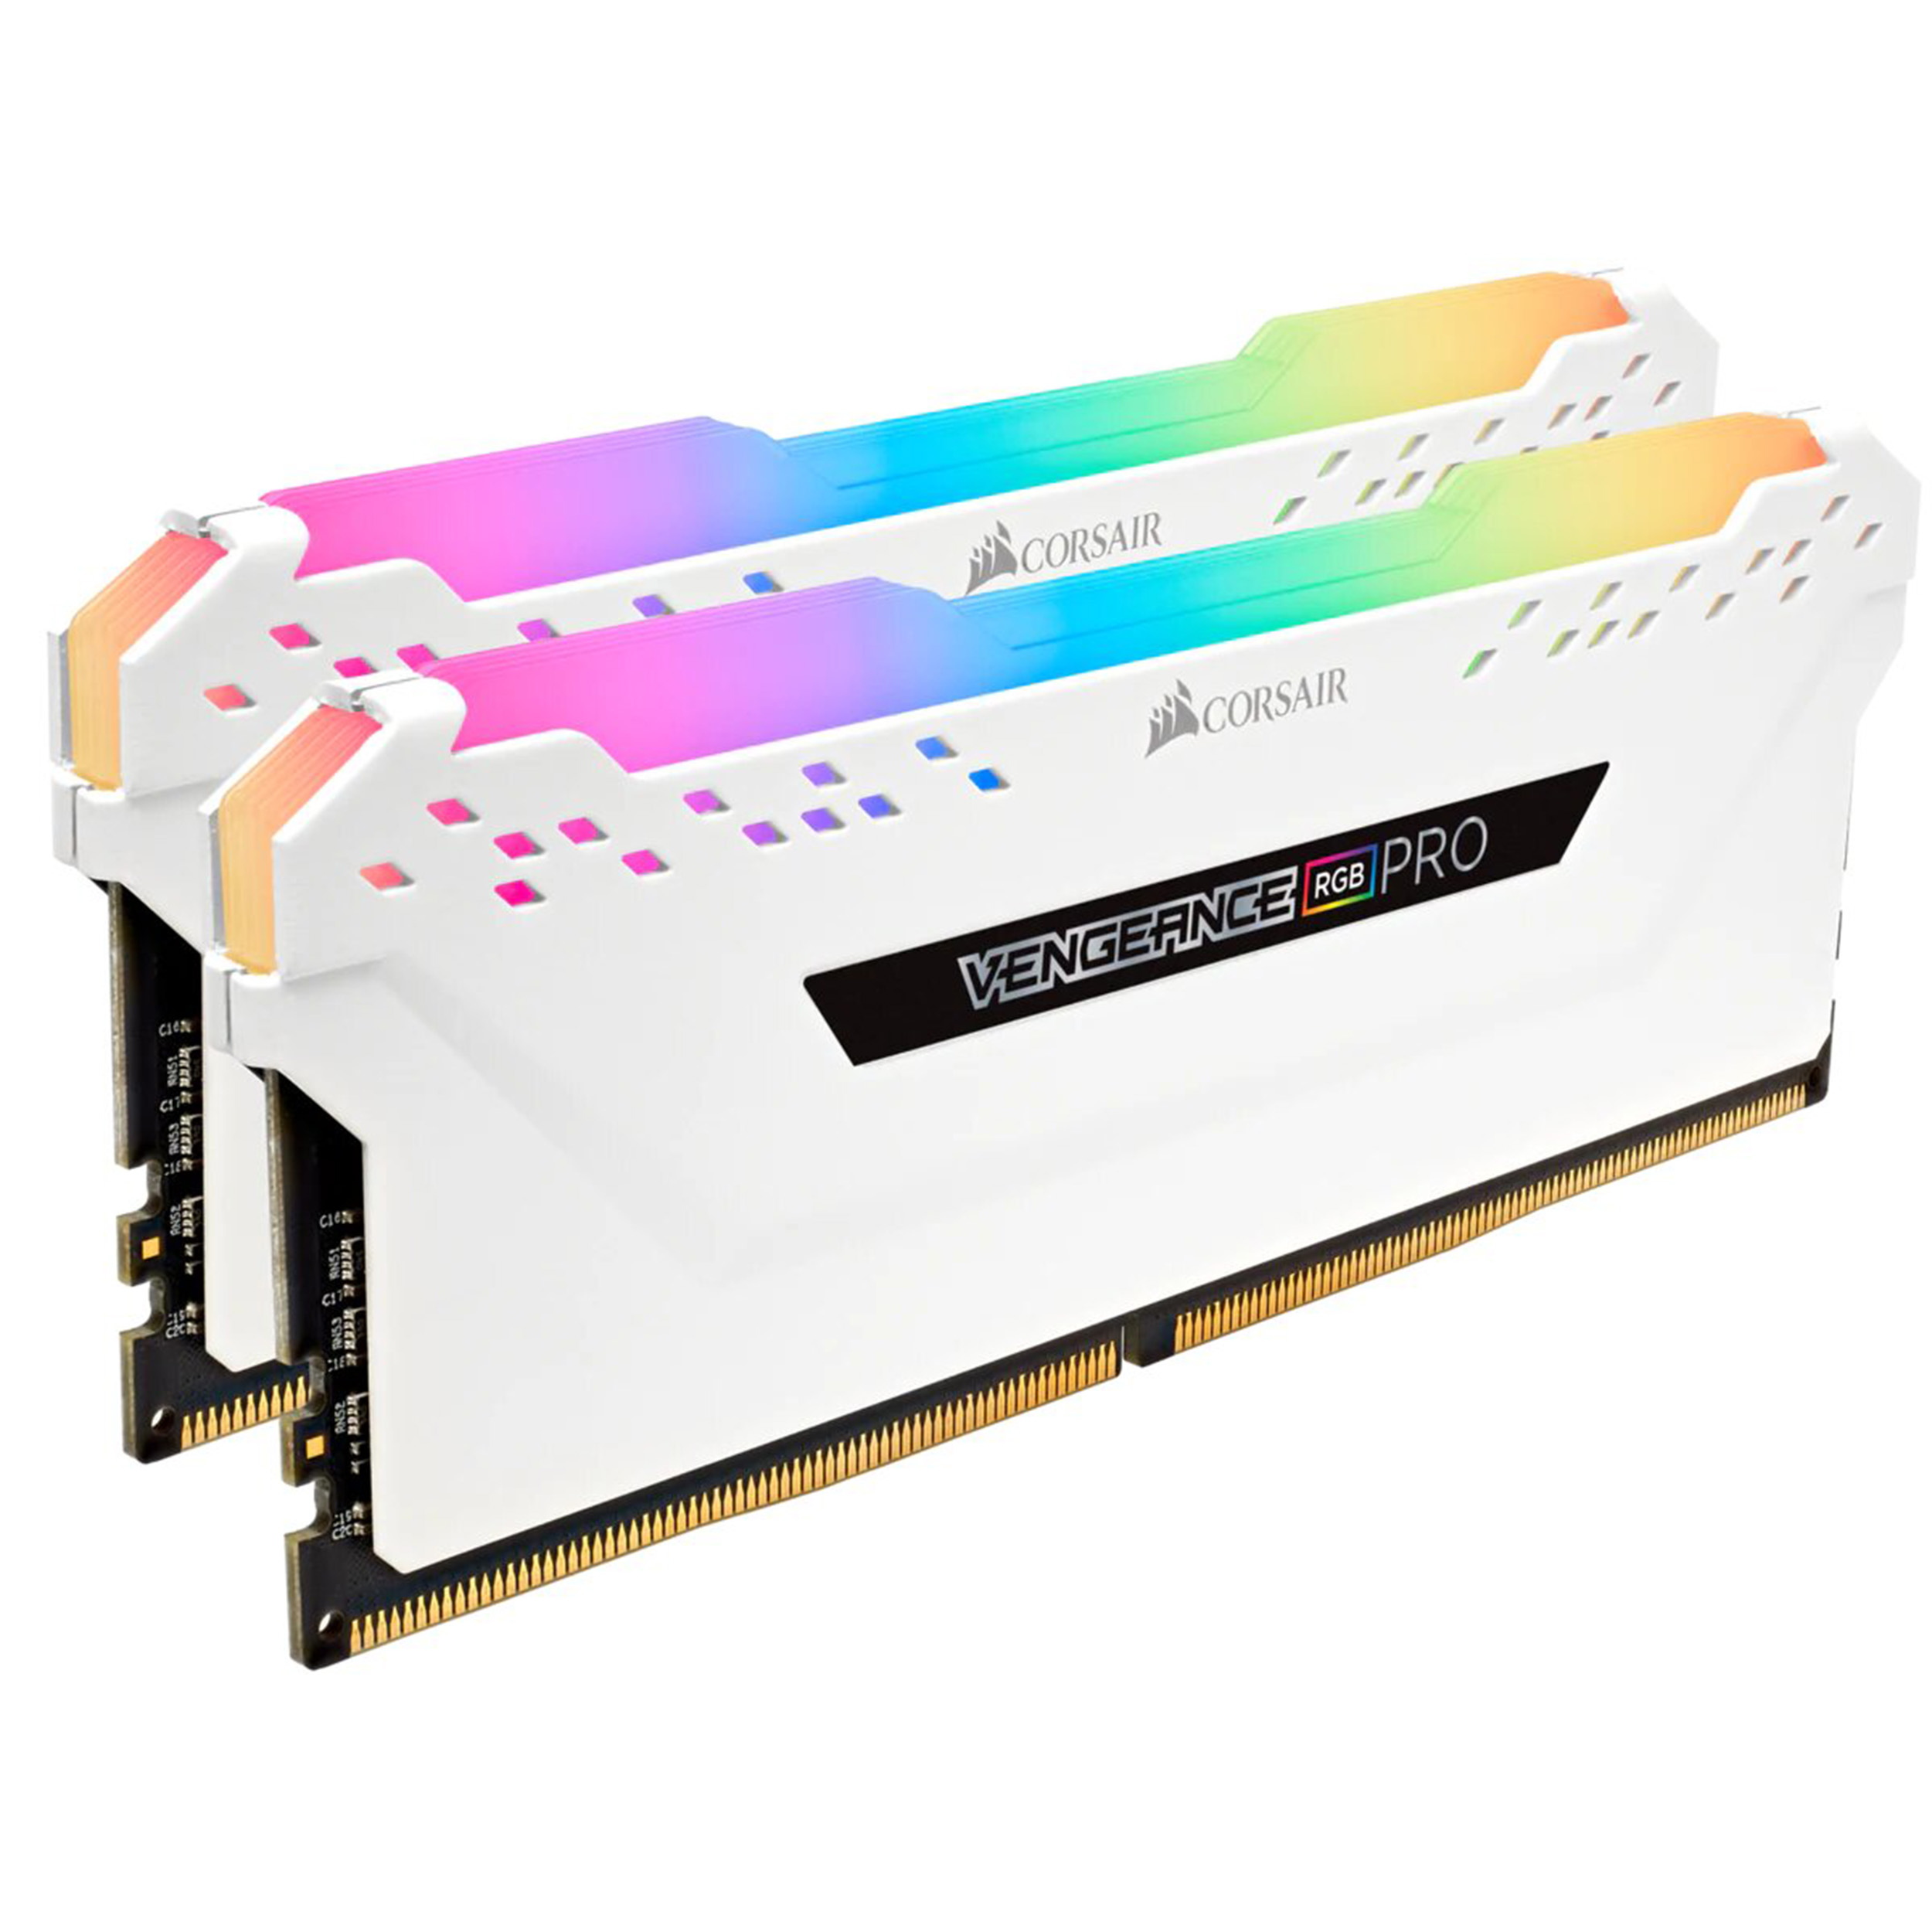 نقد و بررسی رم دسکتاپ DDR4 دو کاناله 3200 مگاهرتز CL16 کورسیر مدل VENGEANCE RGB RPO ظرفیت 16گیگابایت توسط خریداران